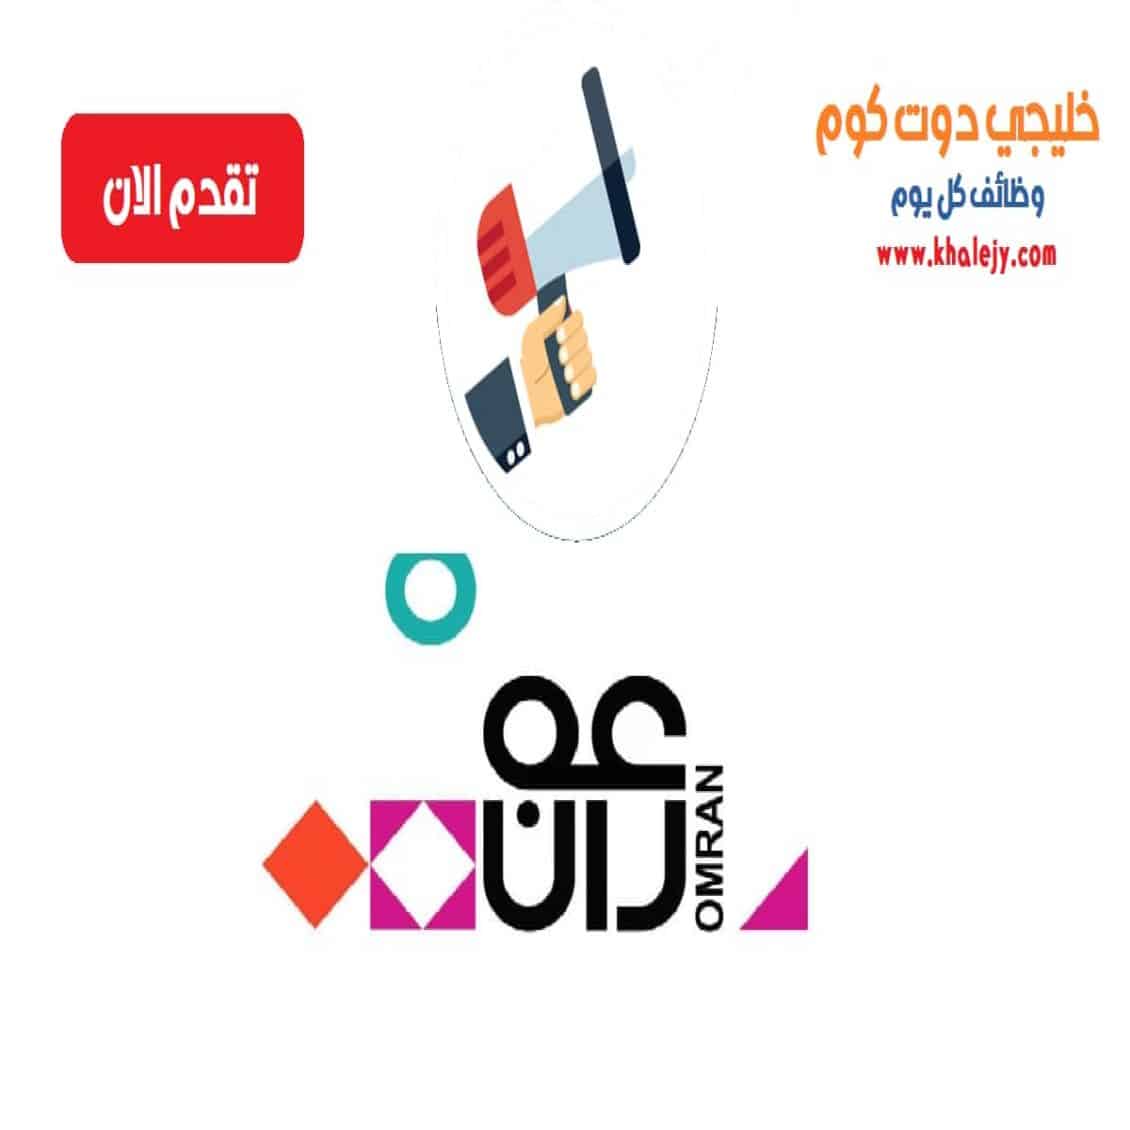 وظائف مجموعة عمران في سلطنة عمان لجميع الجنسيات